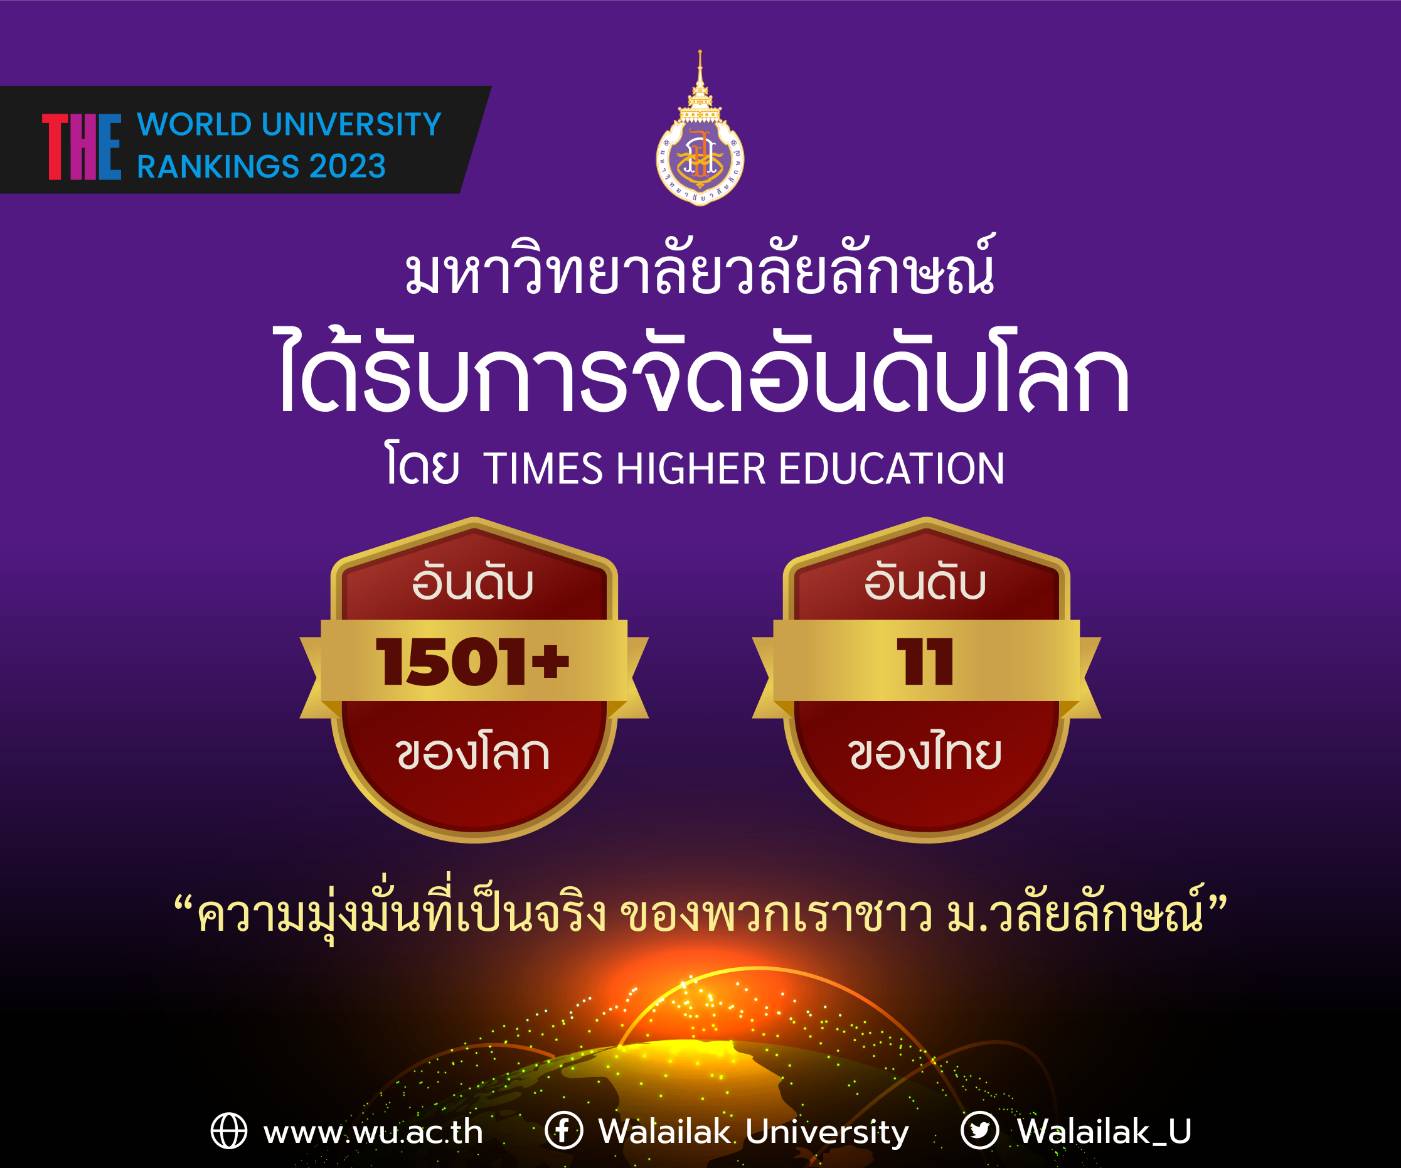 ม.วลัยลักษณ์ปลื้ม ได้รับการจัดอันดับโลกจาก Times Higher Education อันดับที่ 1501+ ของโลก อันดับที่ 11 ของไทย